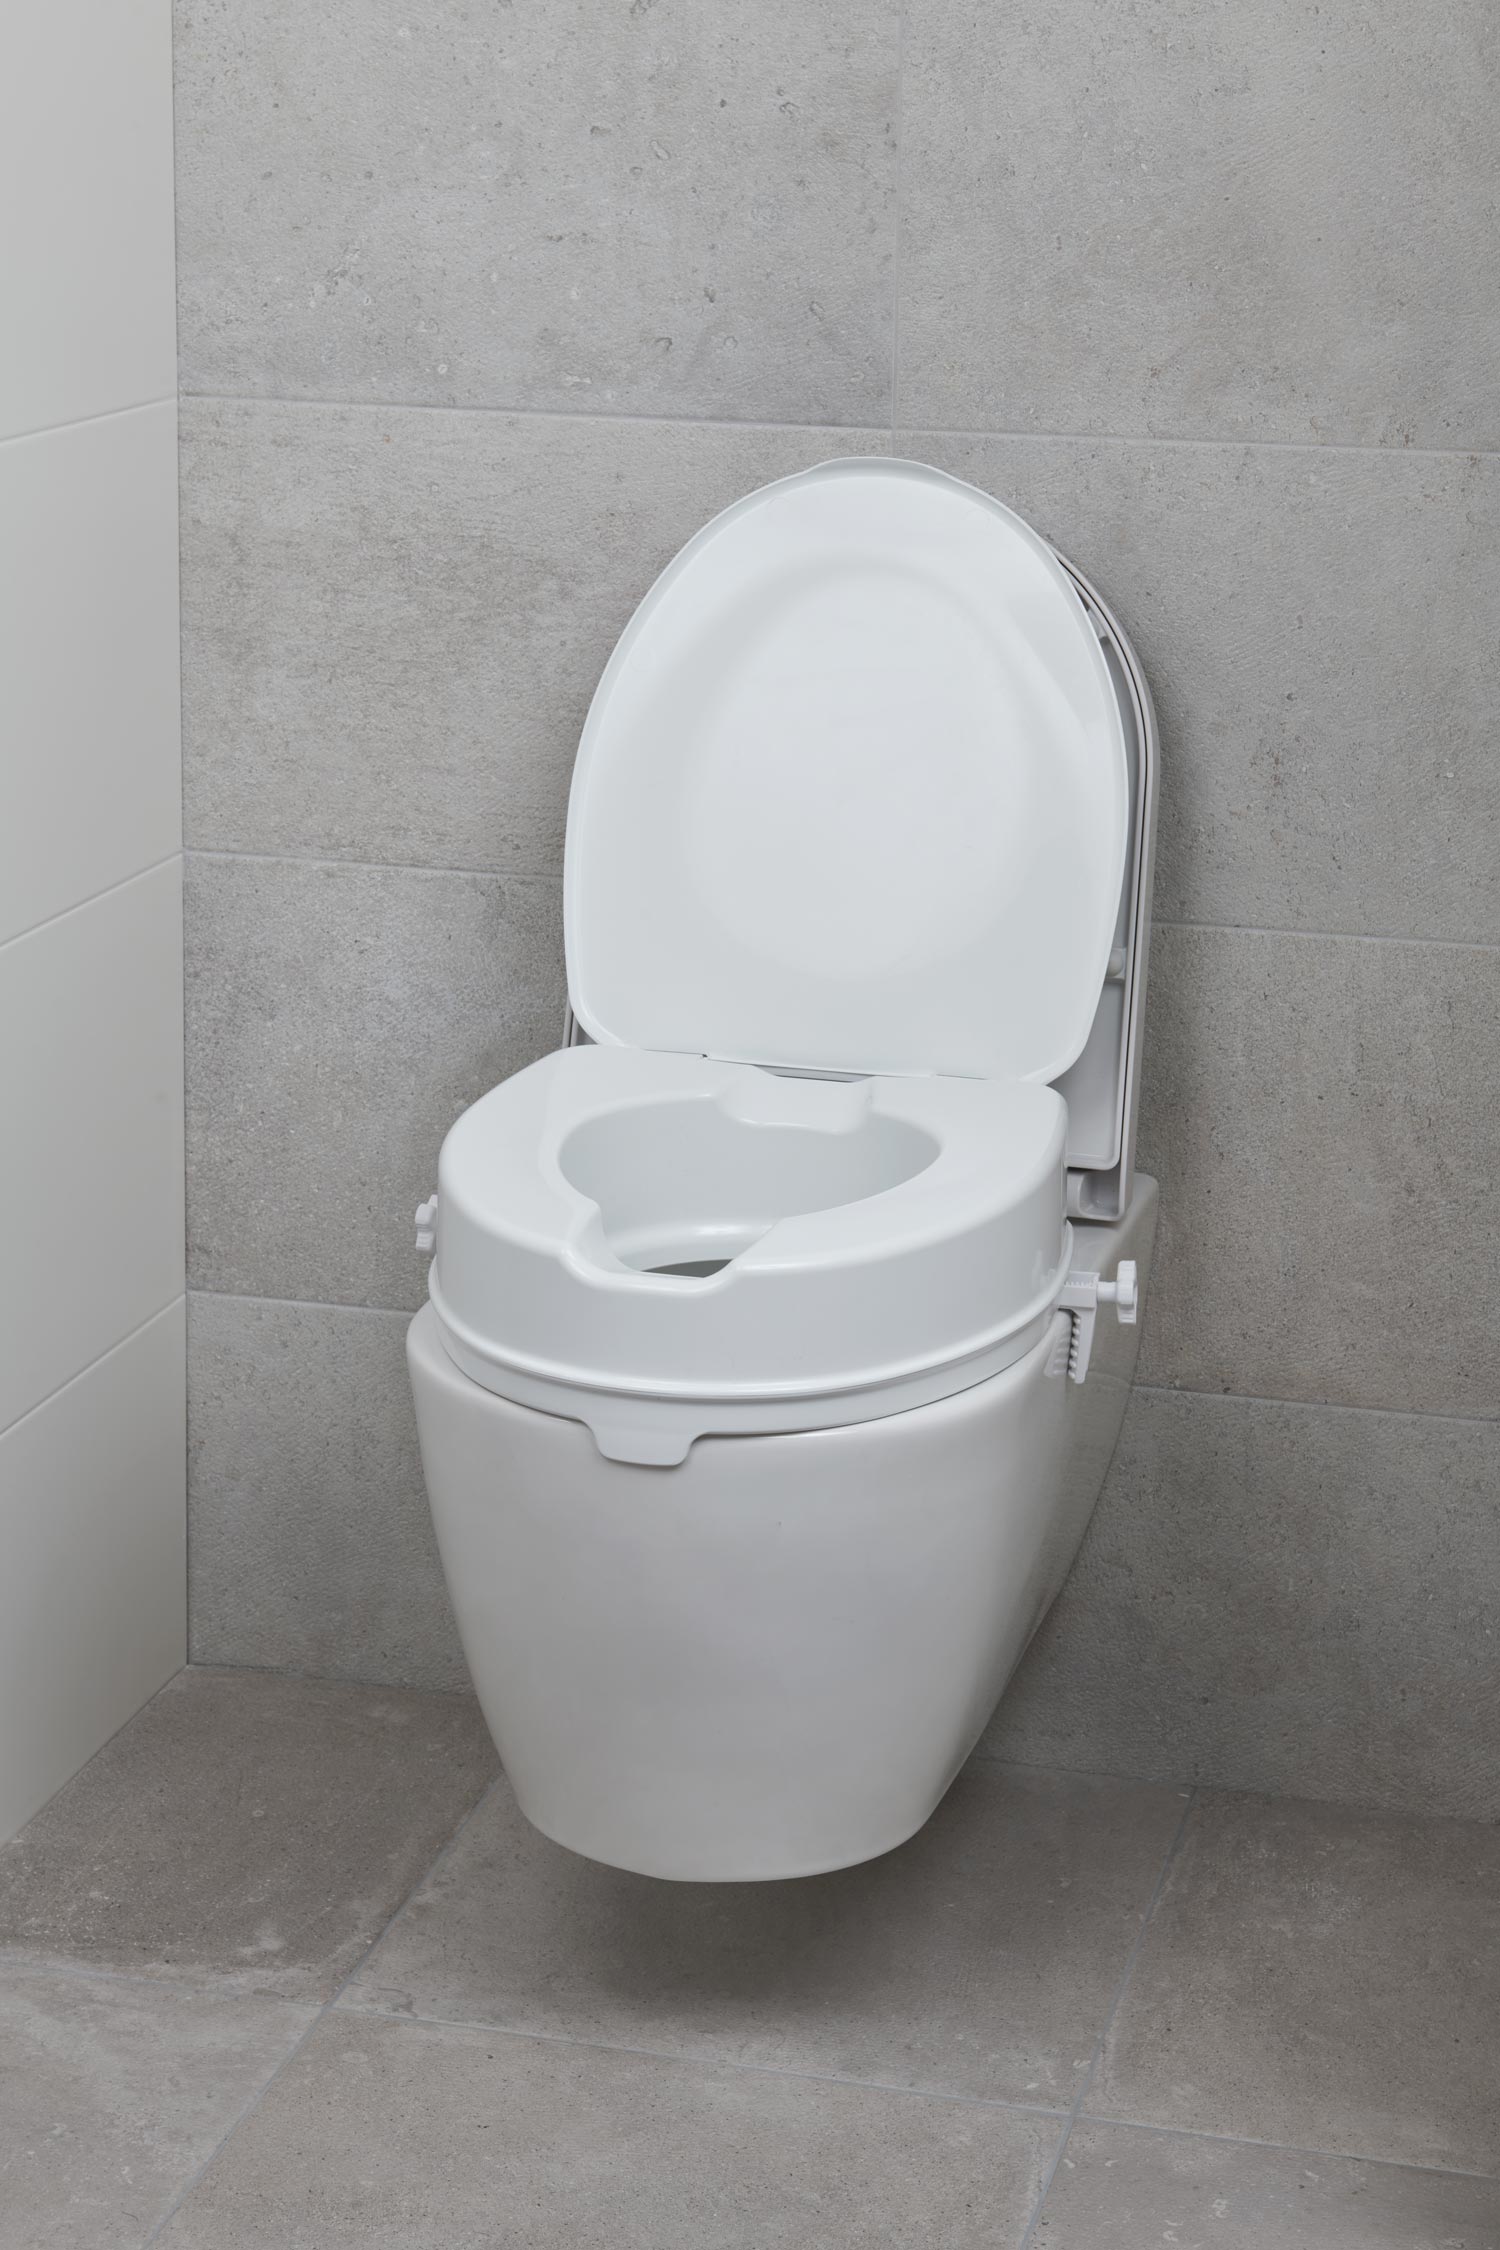 Toilet verhoging badkamer wc senioren